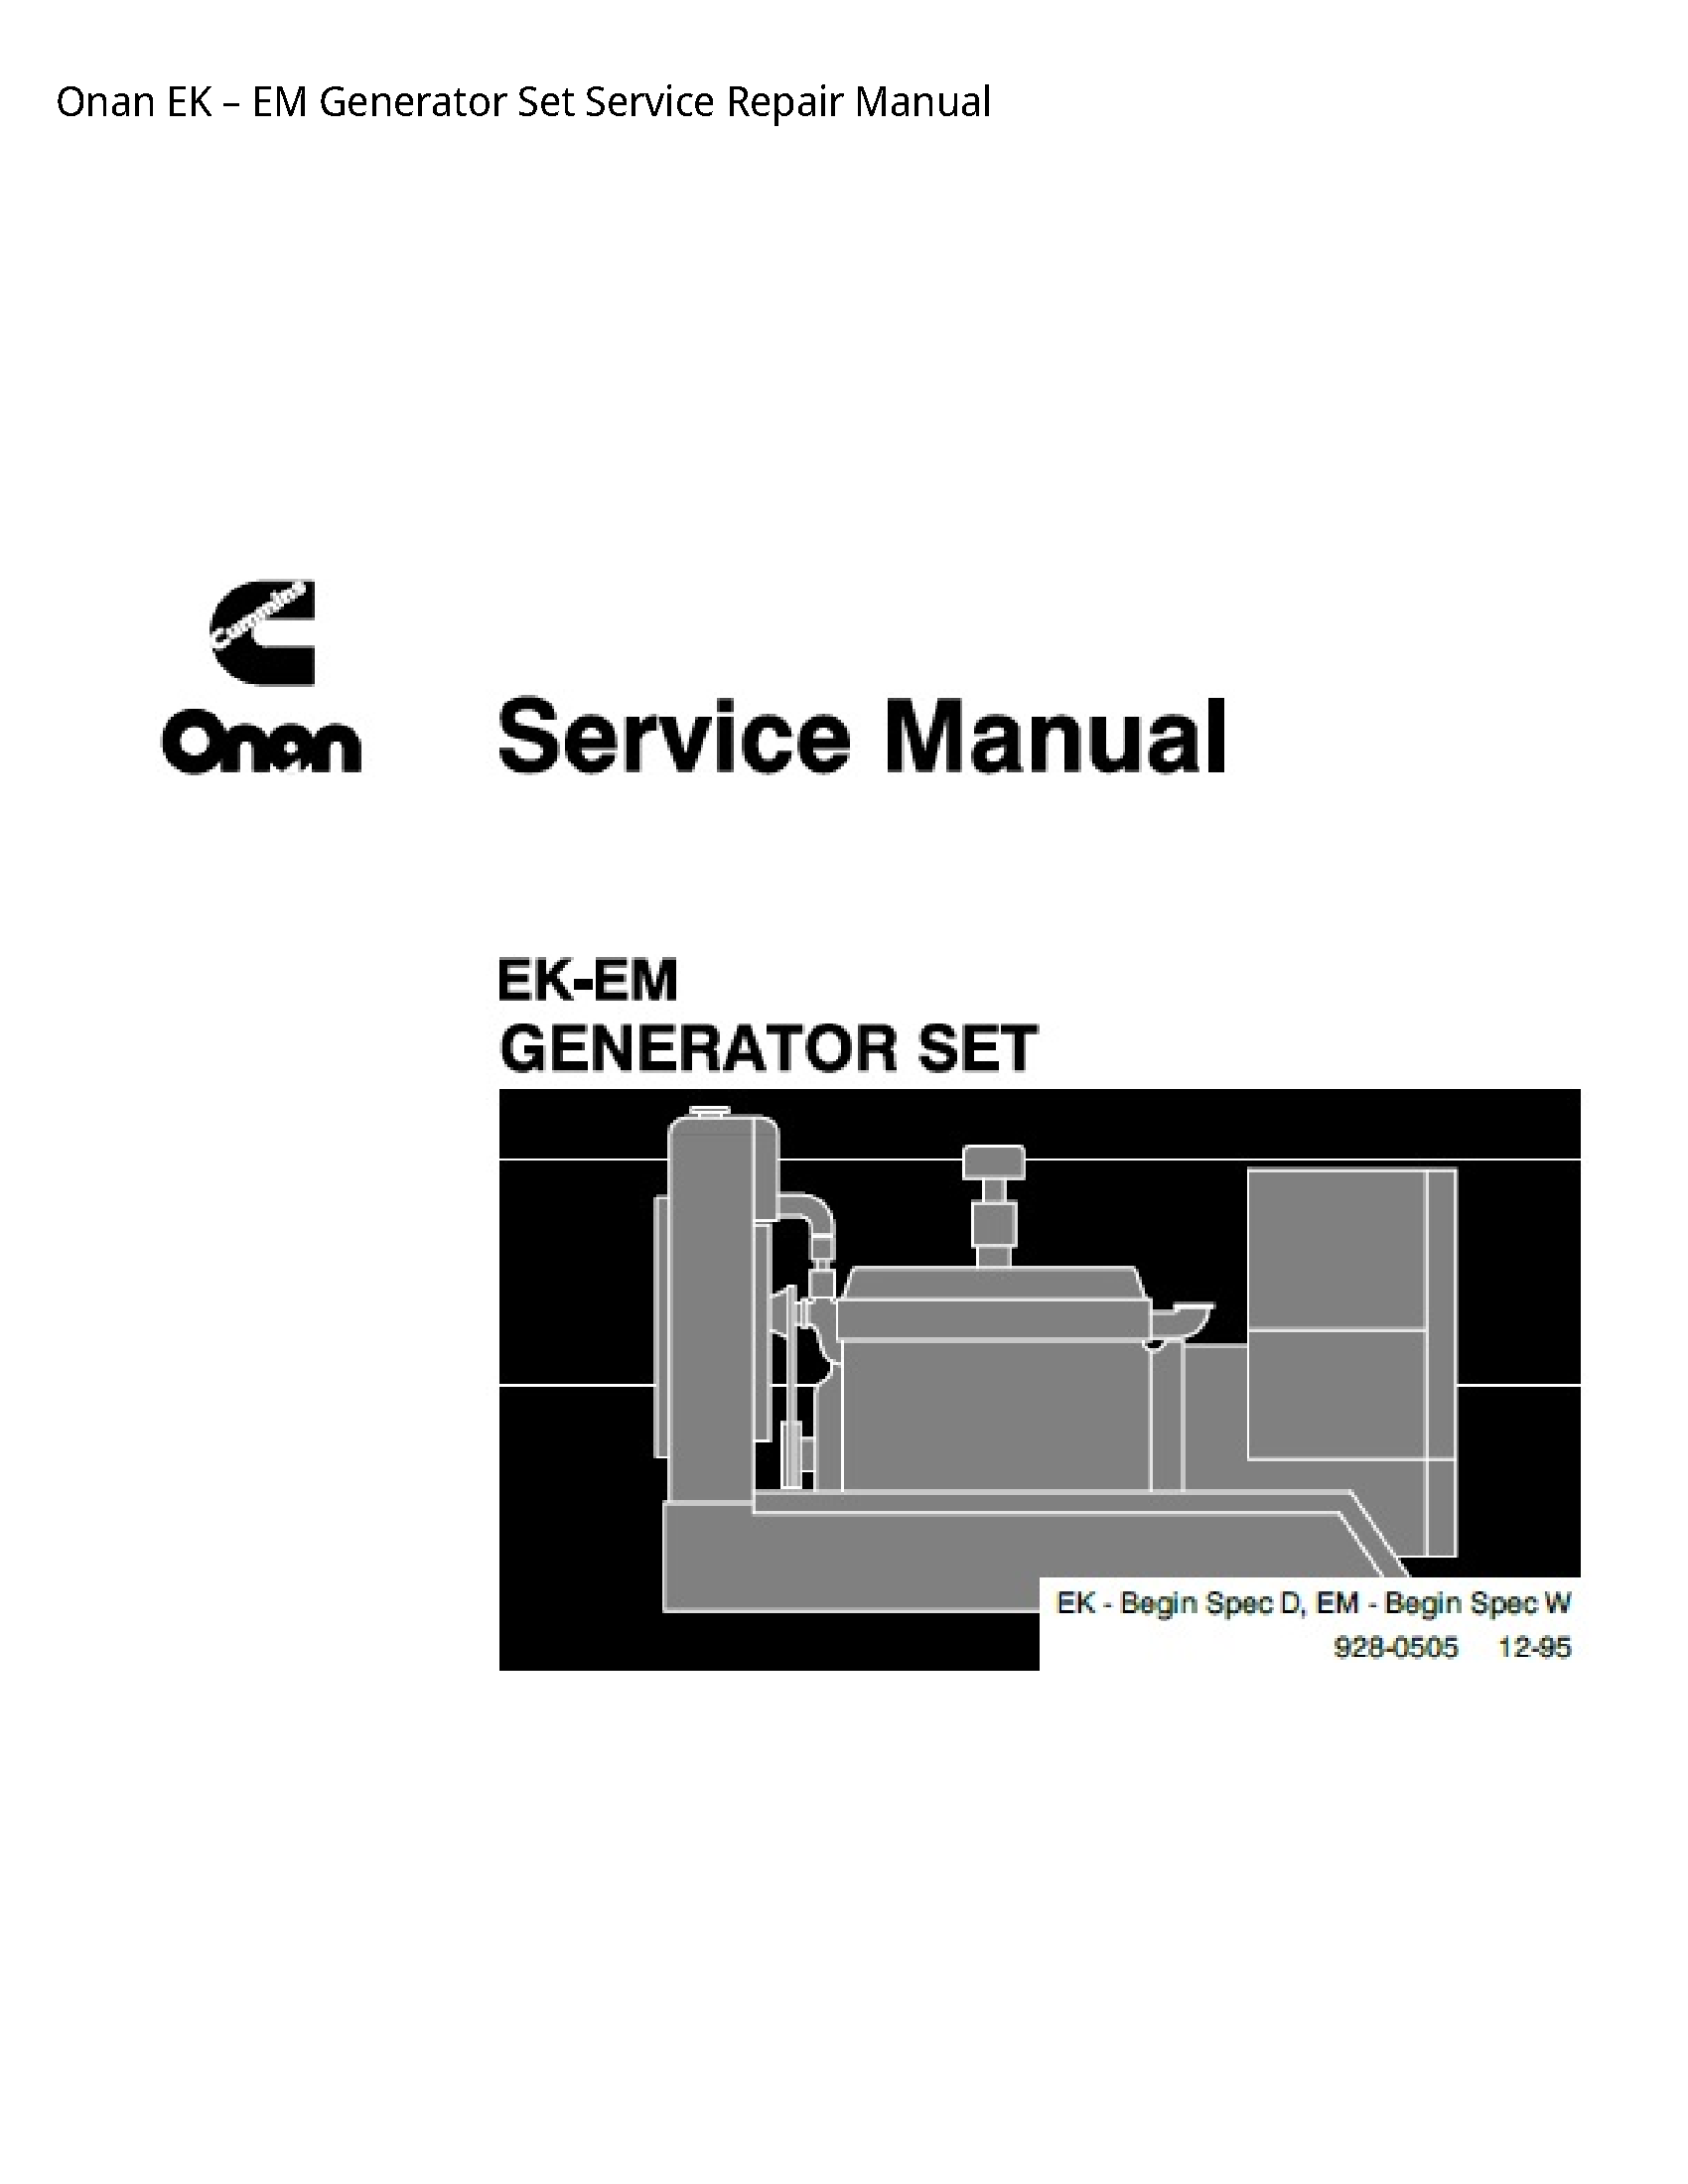 Onan EK EM Generator Set manual